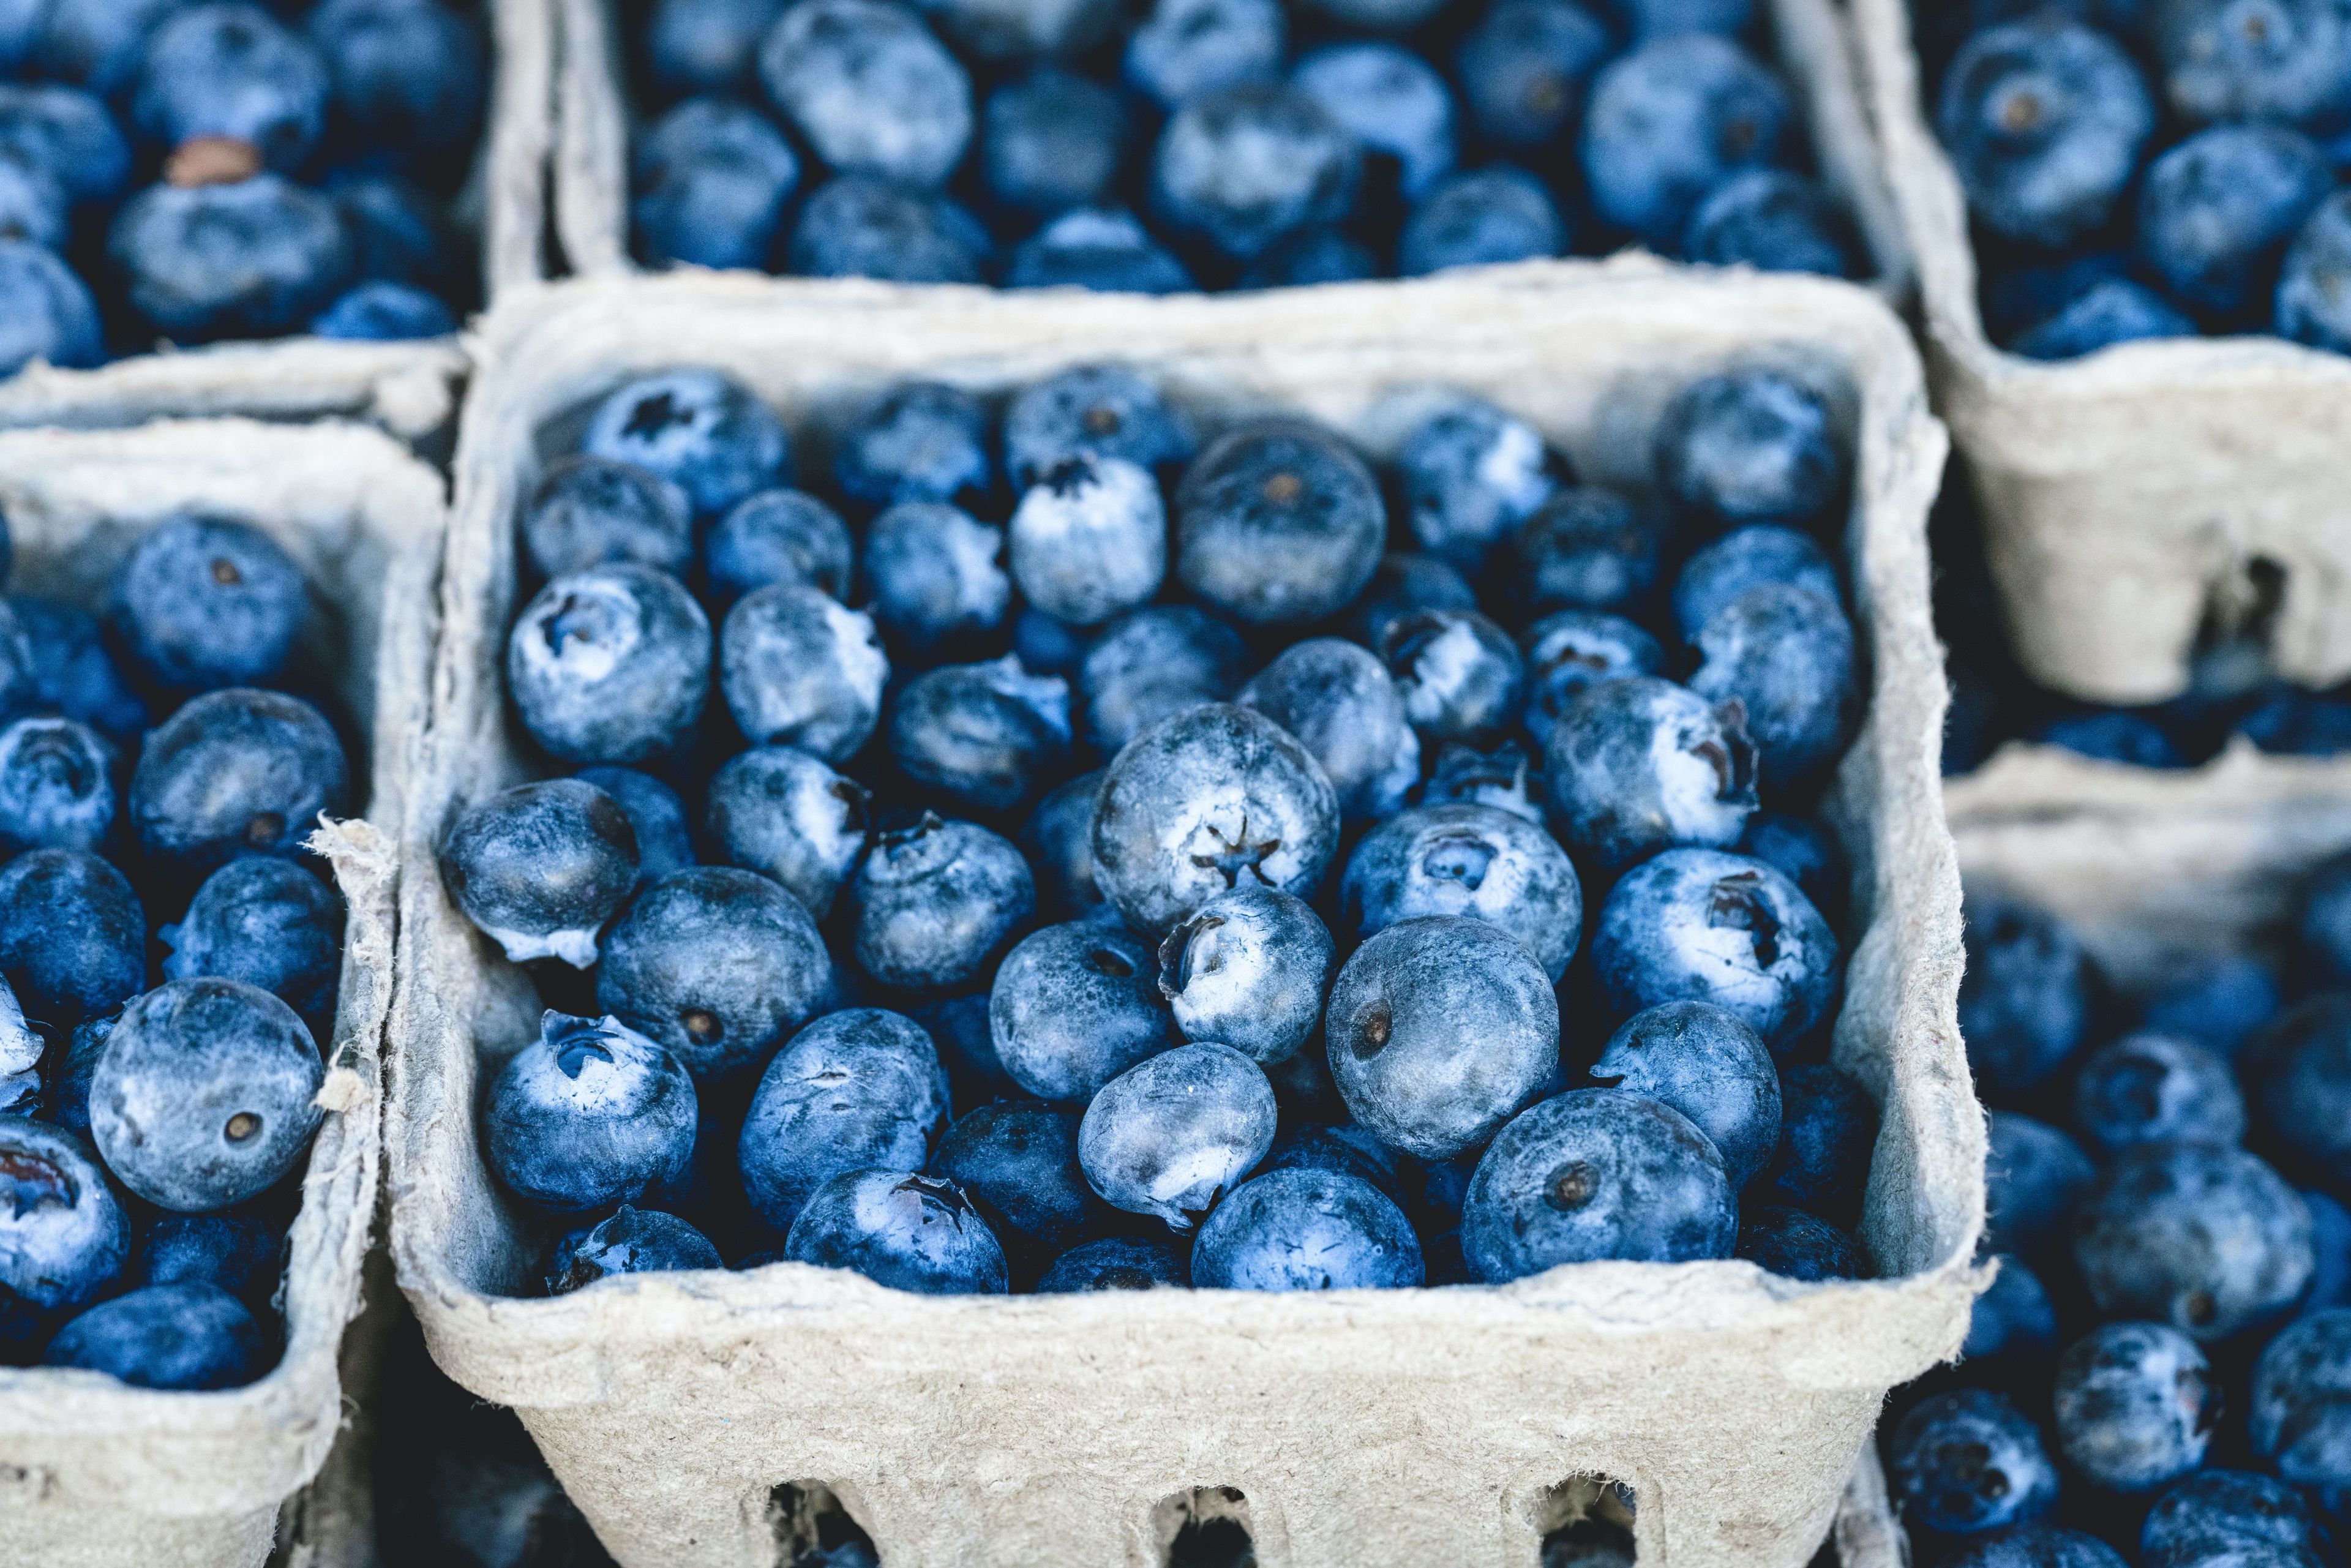 Basket of blueberries